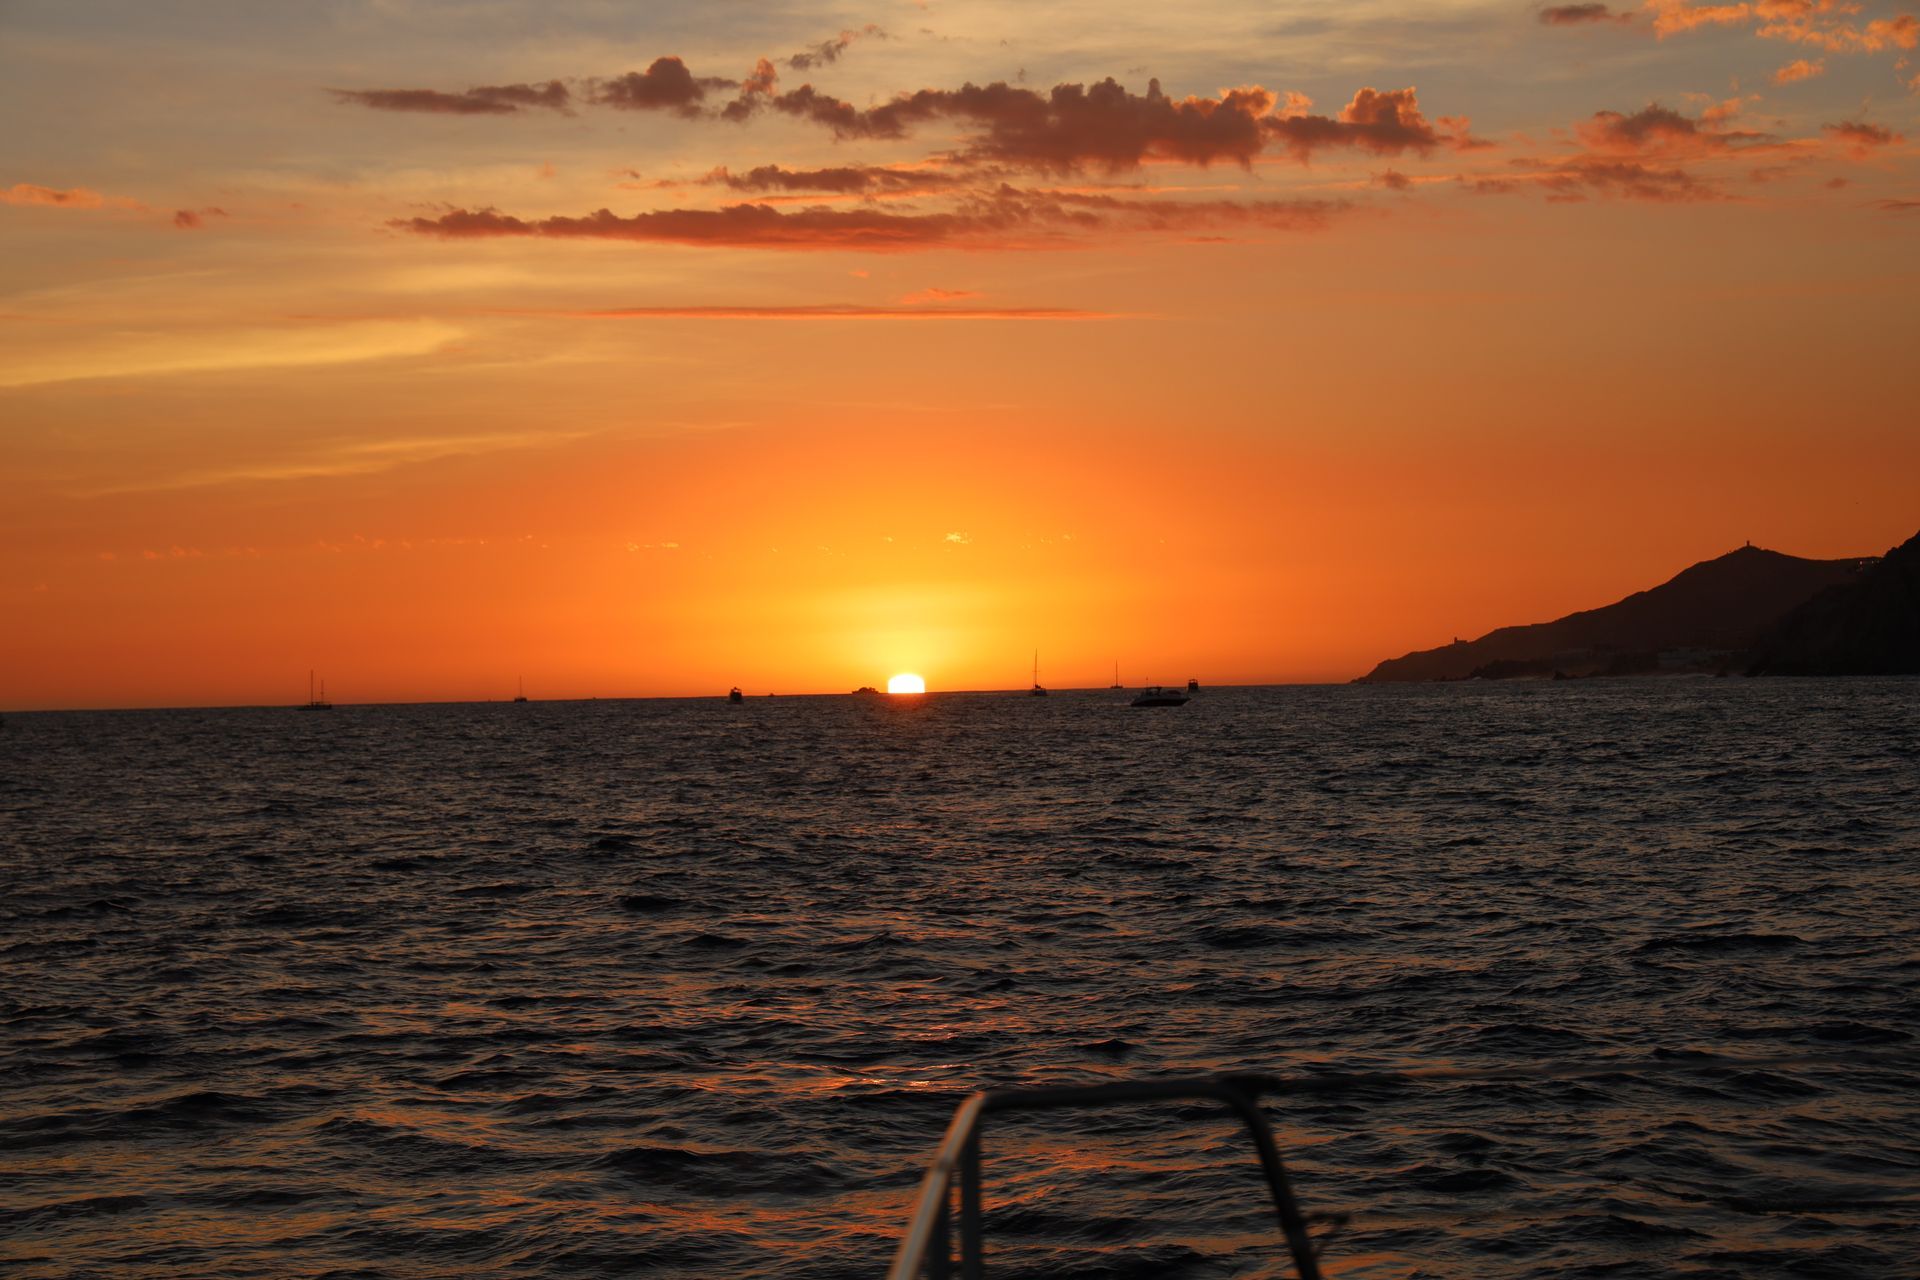 El sol se pone sobre el océano con un barco en la distancia.